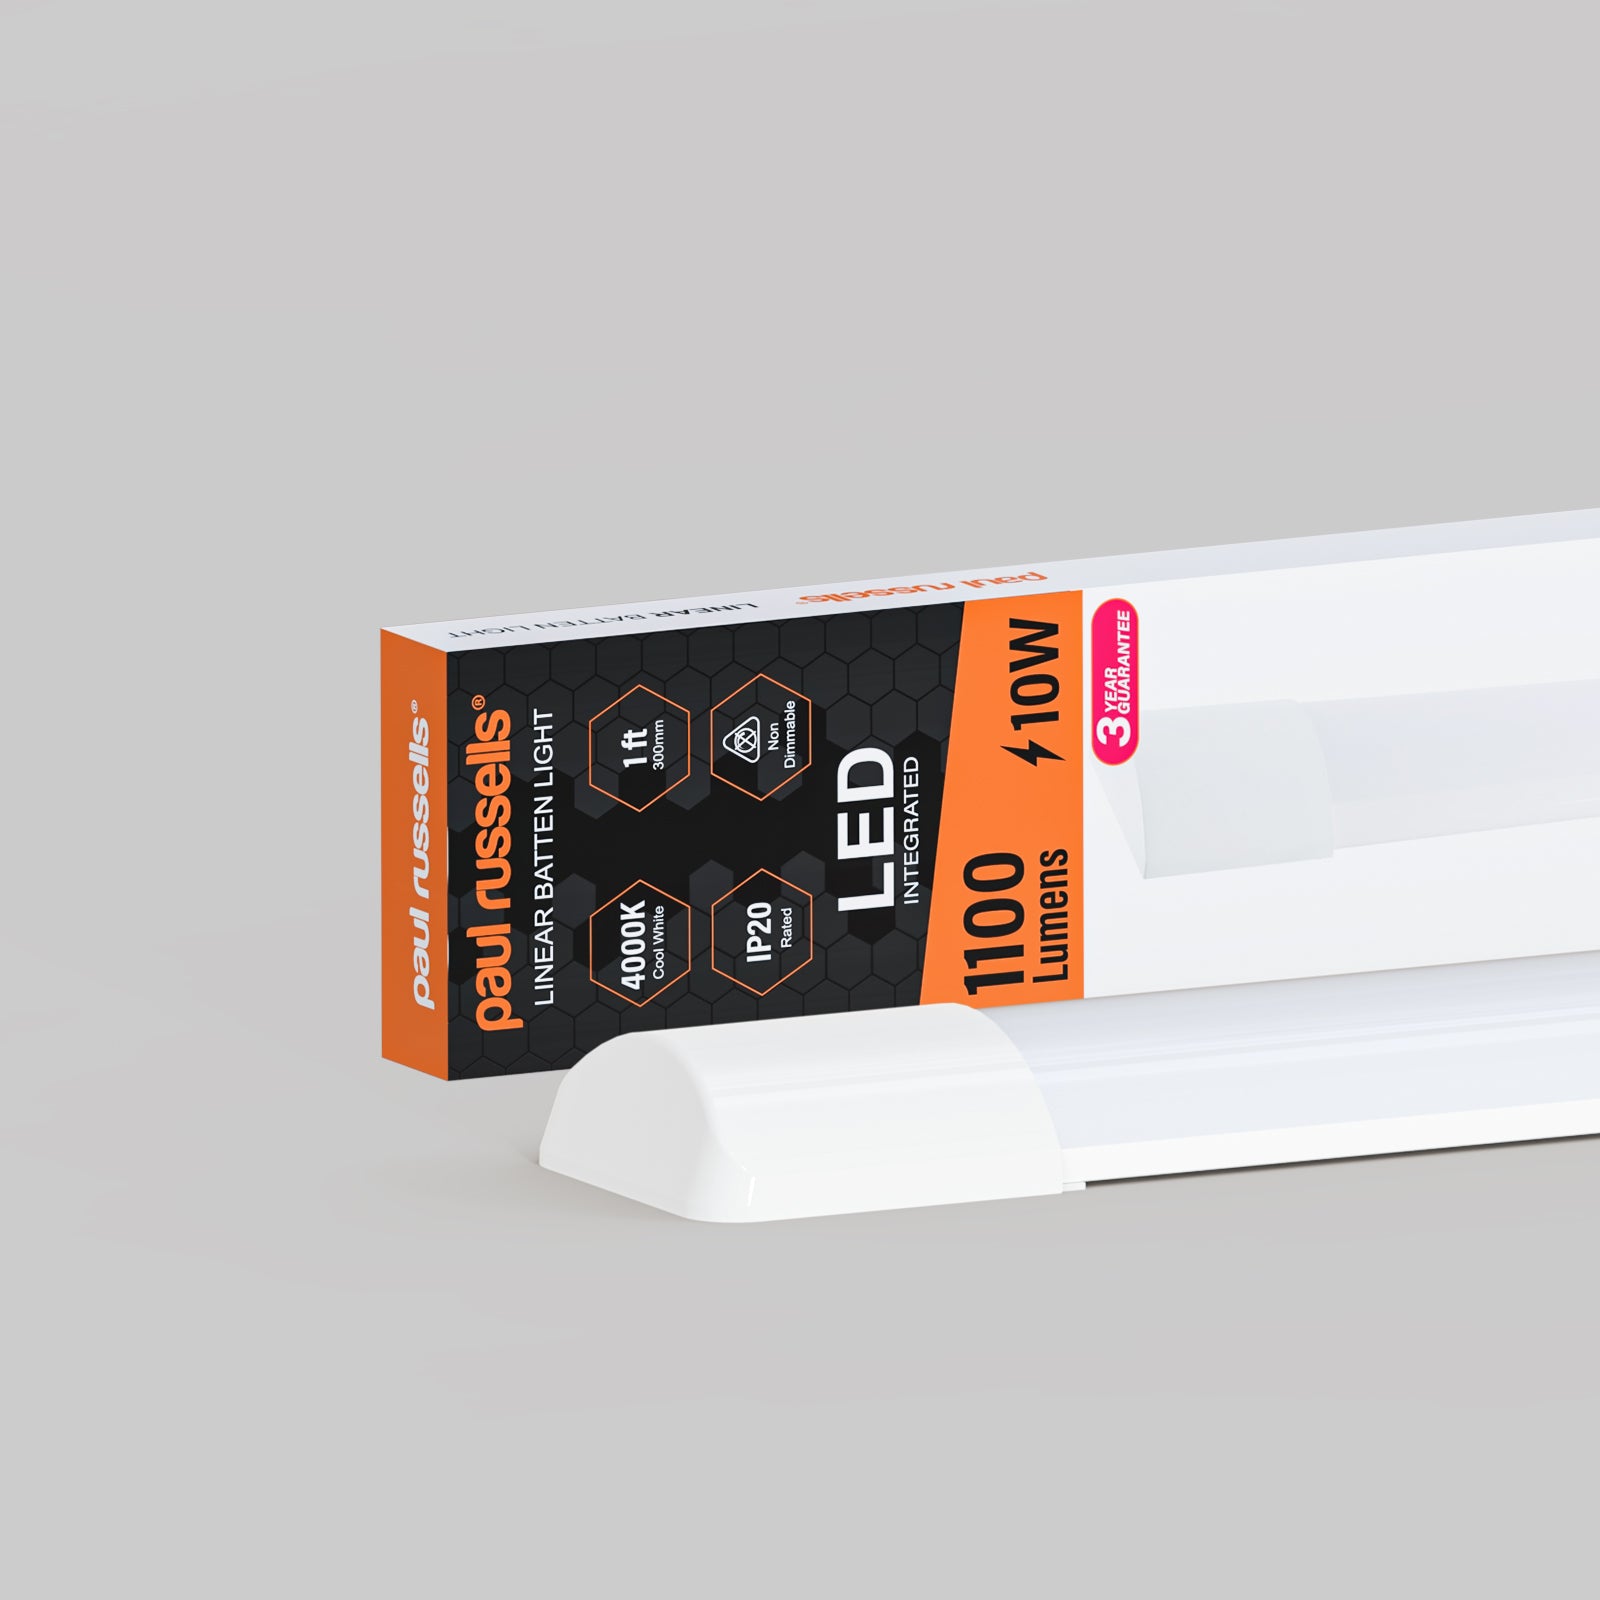 10W LED Batten Light, 1ft Ceiling Fitting Tube Light, 1100 Lumen, 4000K Cool White, Fluorescent Lighting Replacement